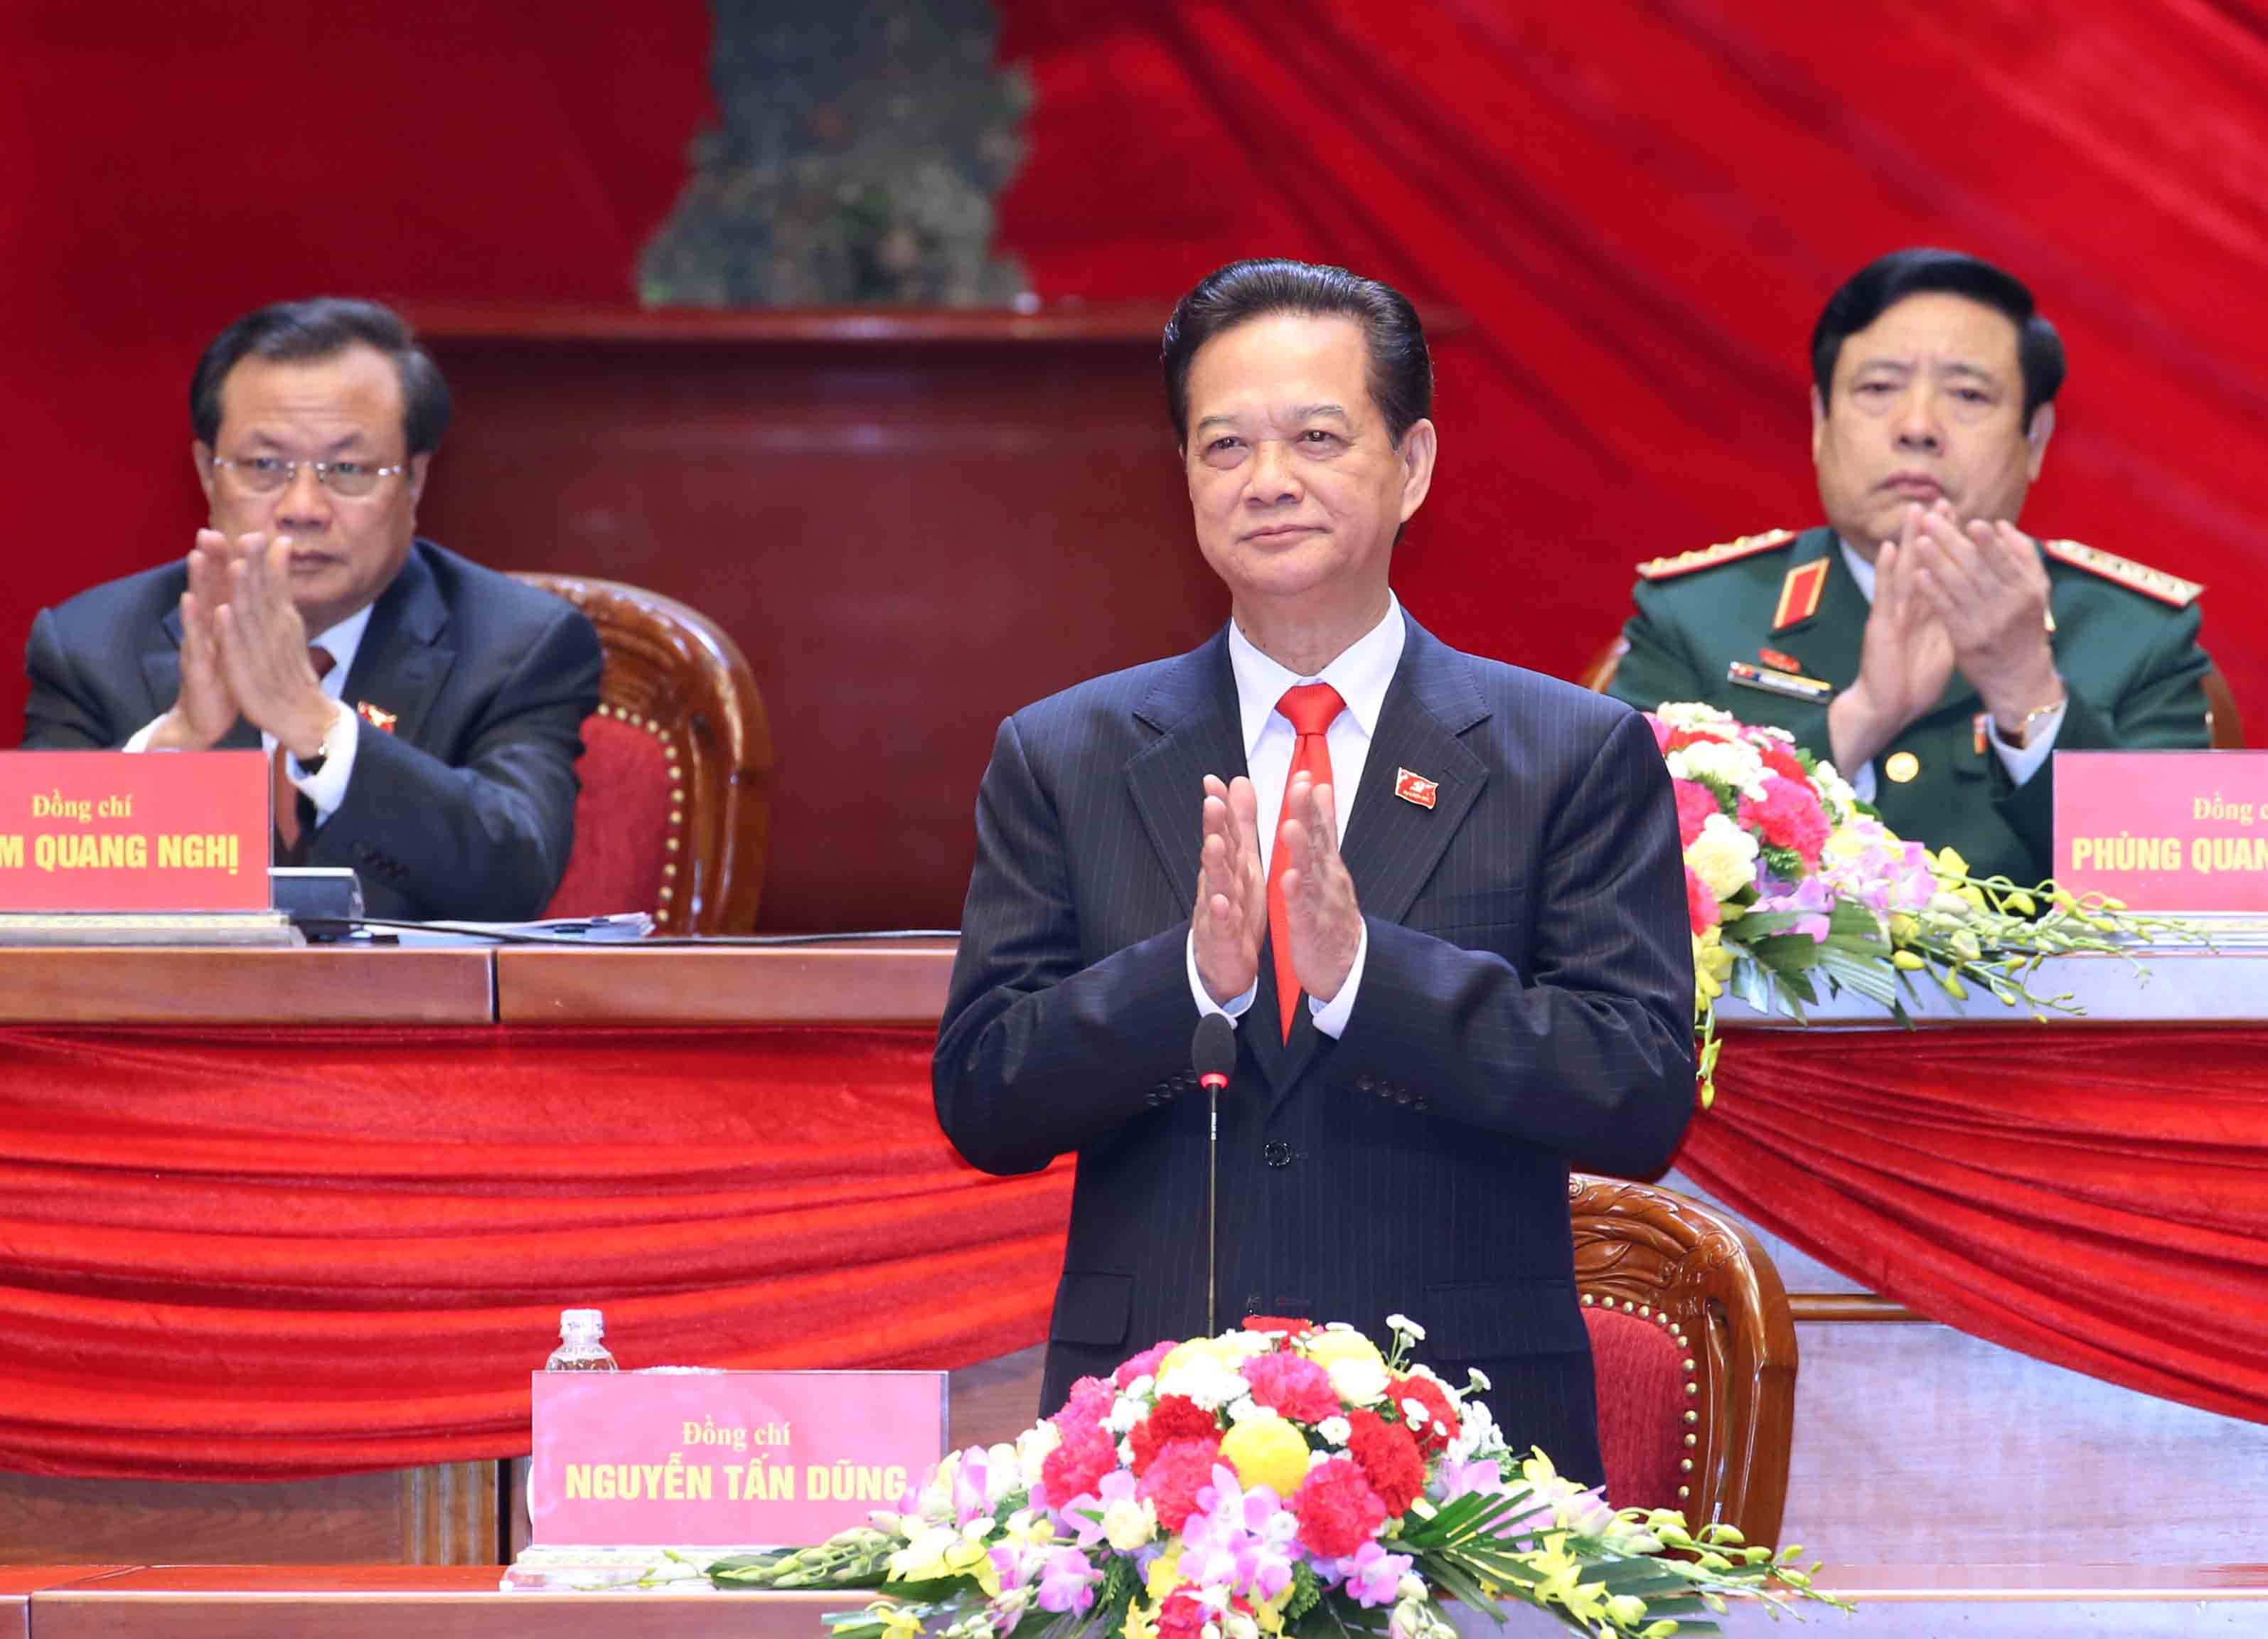 Đồng chí Nguyễn Tấn Dũng, Ủy viên Bộ Chính trị, Thủ tướng Chính phủ thay mặt Đoàn Chủ tịch điều hành Đại hội. Ảnh: TTXVN 